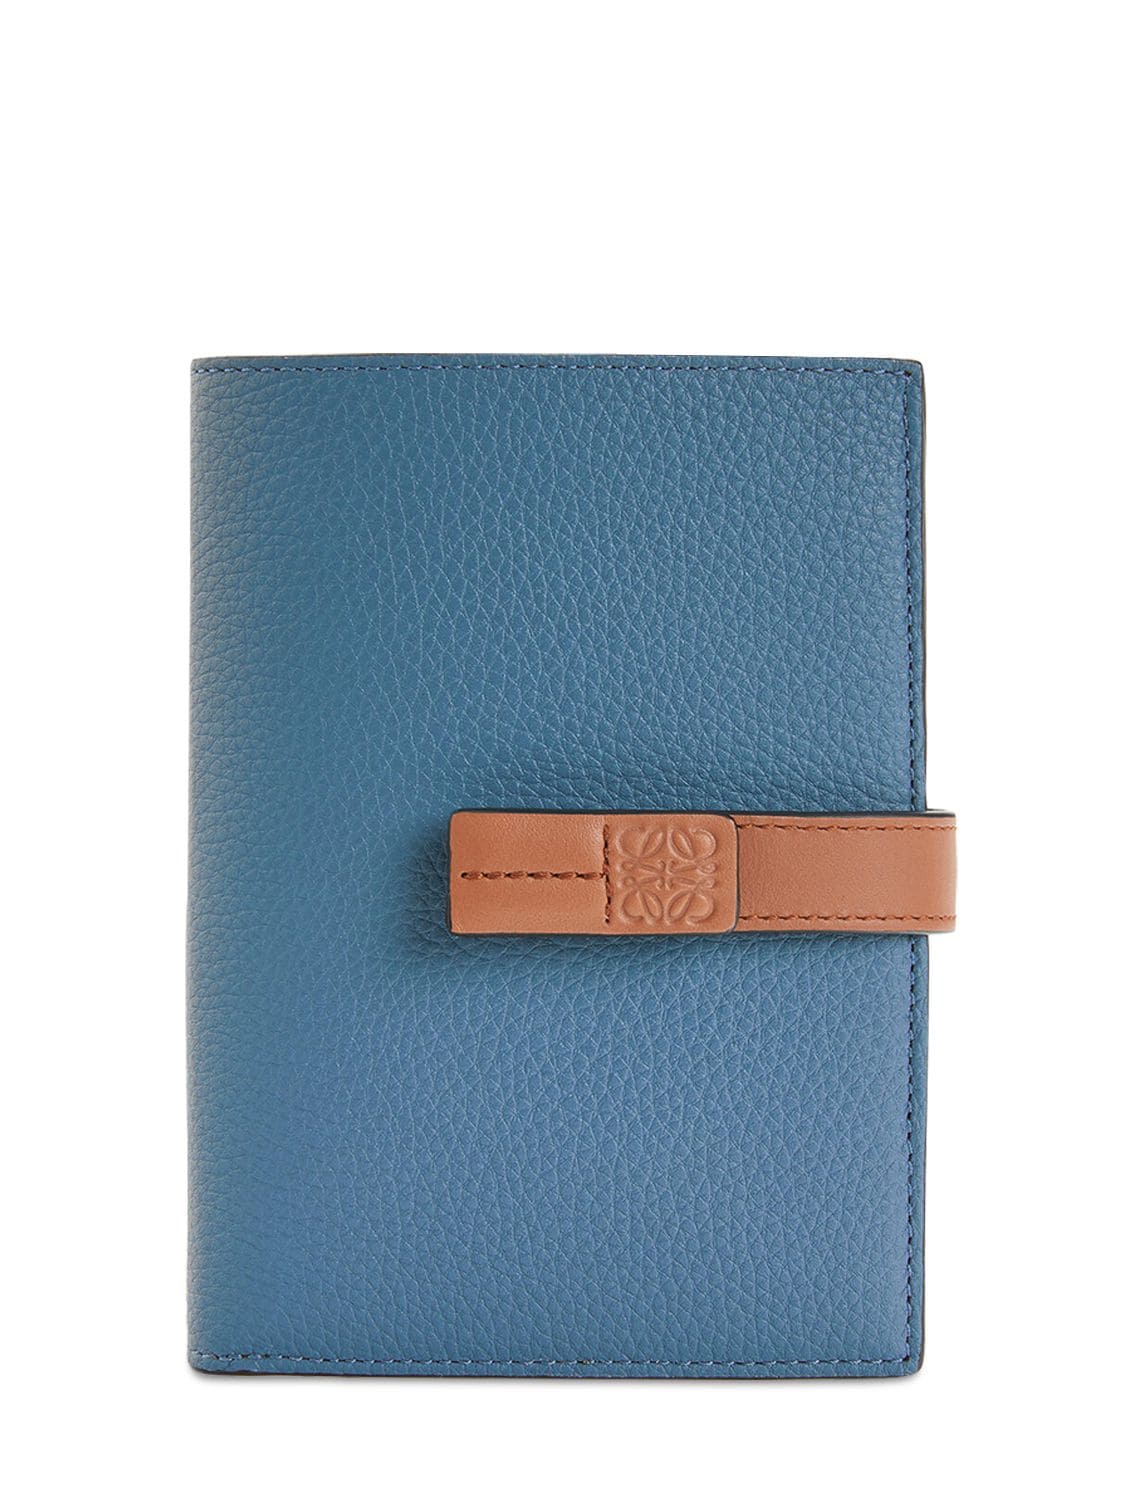 Loewe Medium Vertical Leather Wallet In Steel Blue,tan